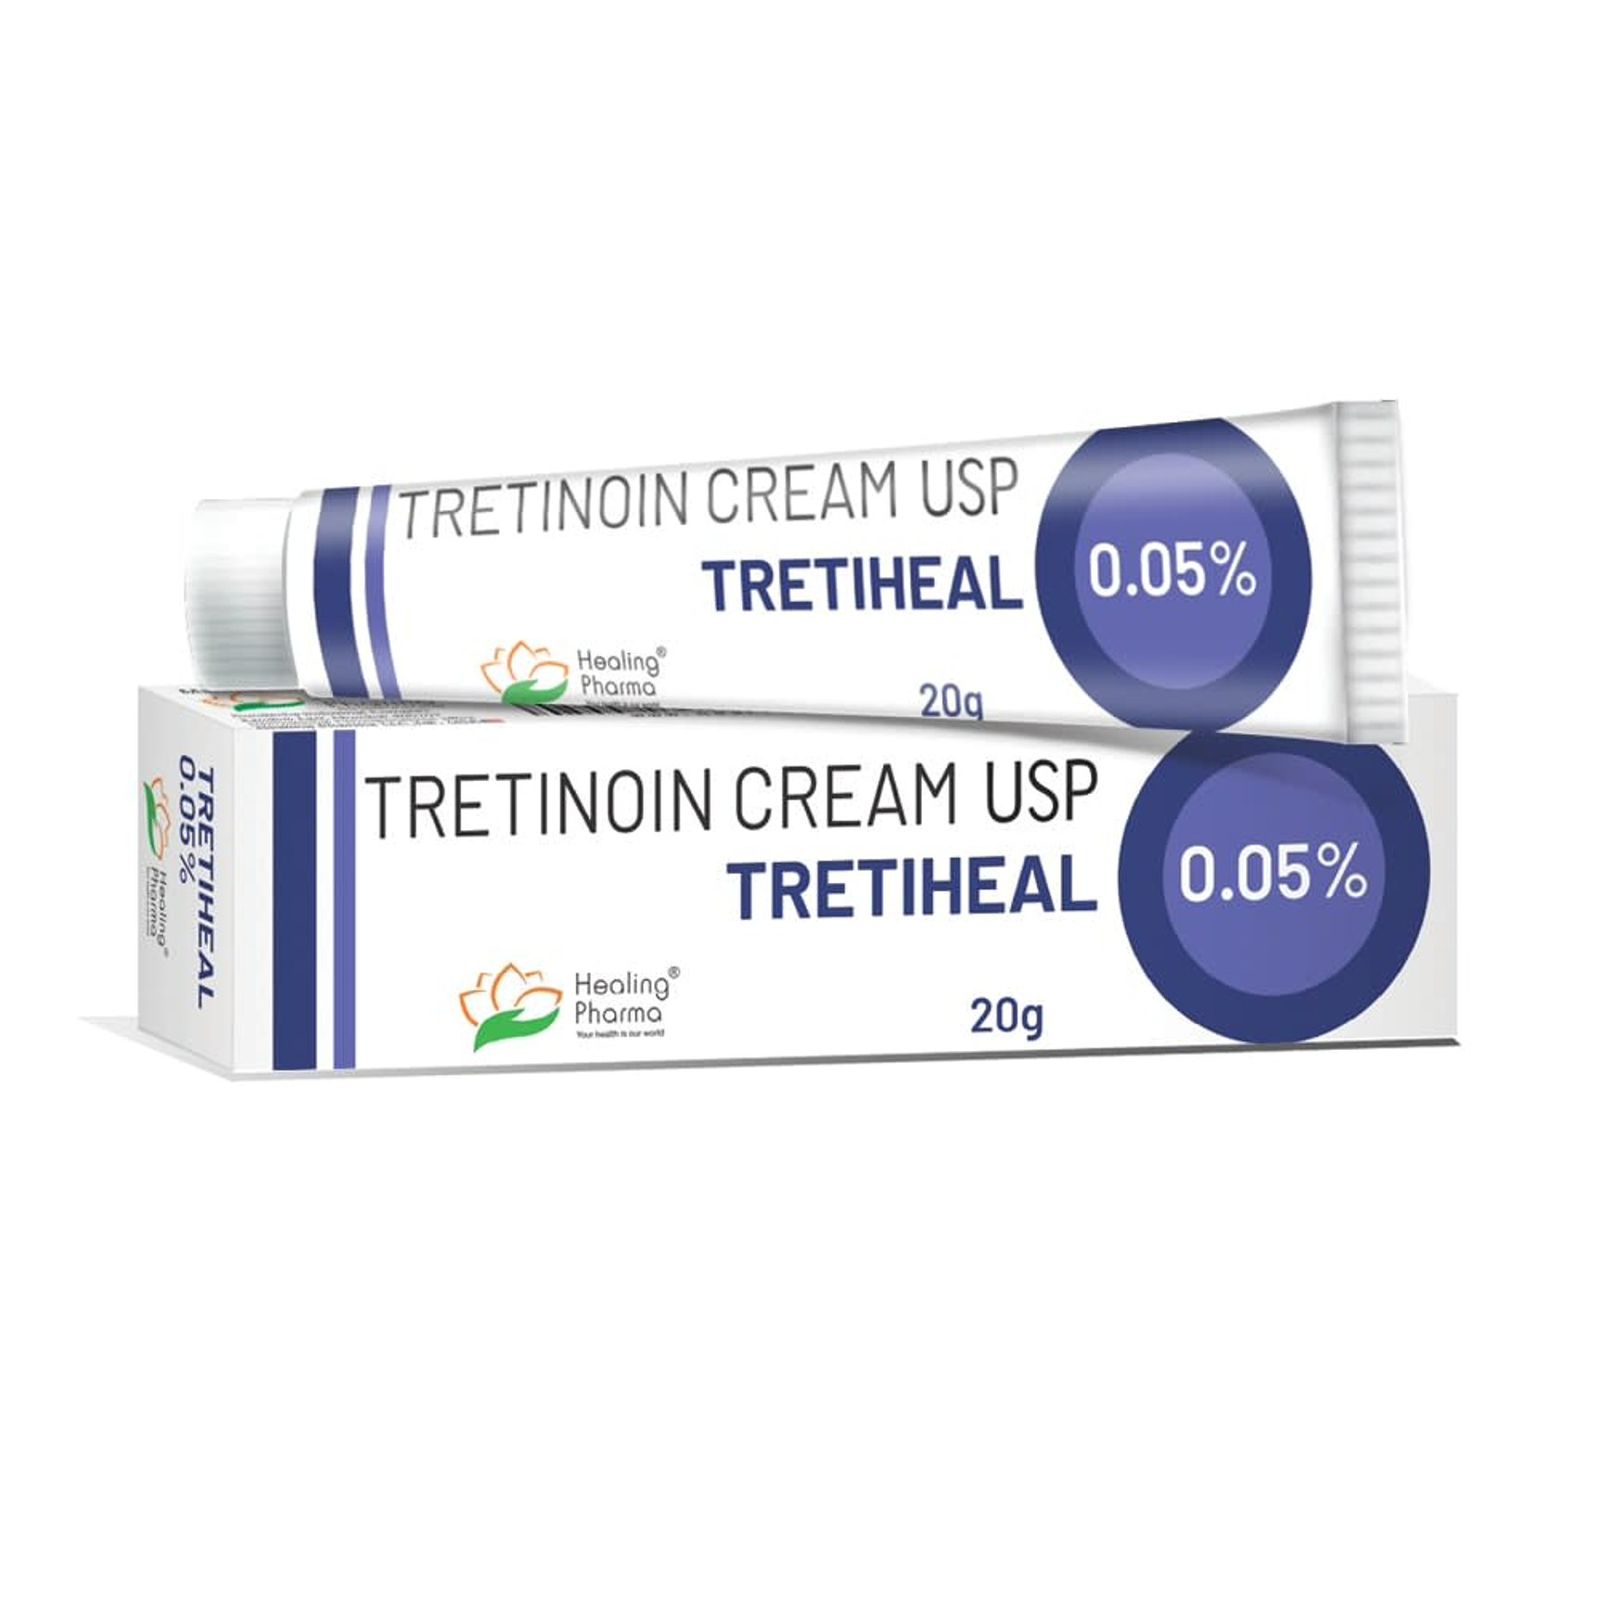 Tretinoin Cream USP Tretiheal 0.05% 20g In Dubai -